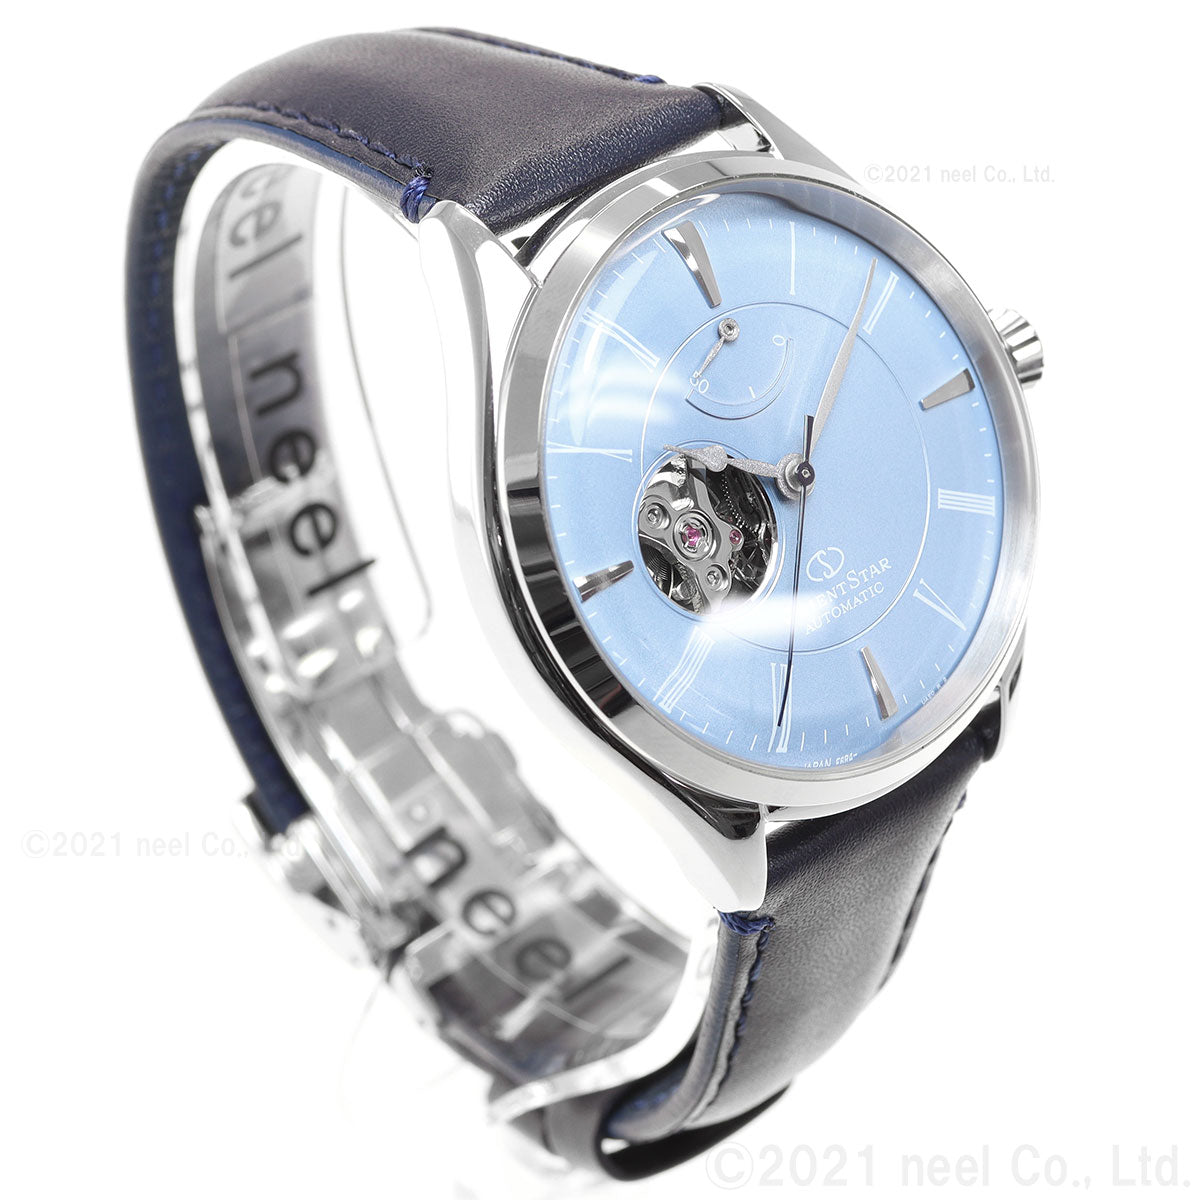 オリエントスター ORIENT STAR 腕時計 メンズ 自動巻き 機械式 クラシック CLASSIC クラシックセミスケルトン RK-AT0203L